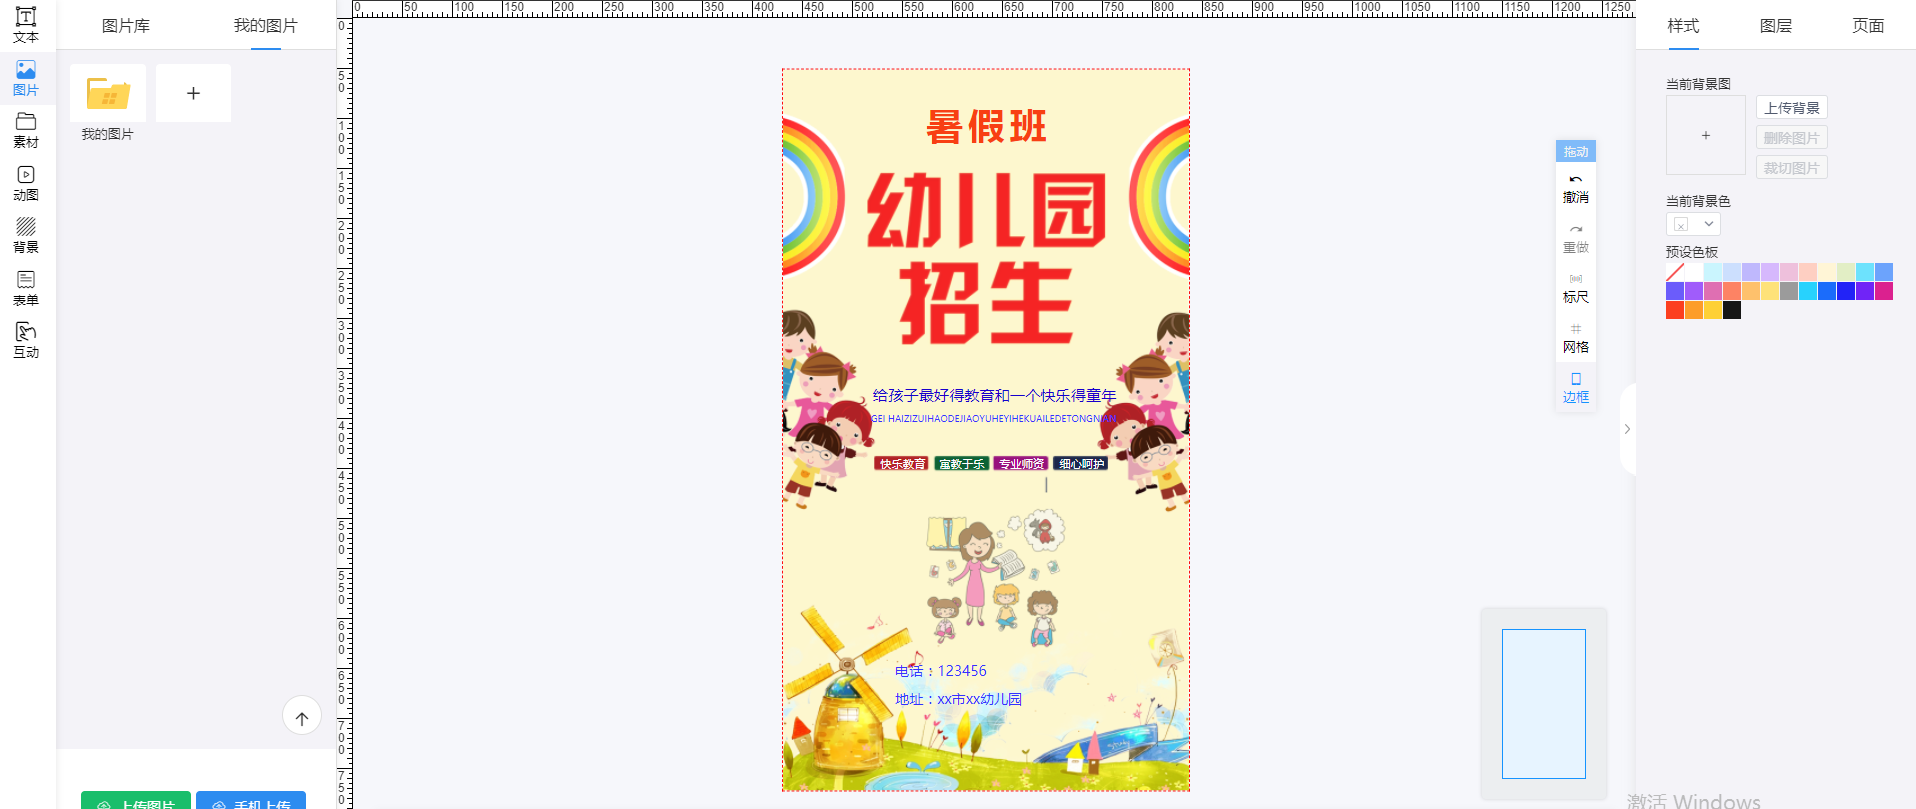 幼儿园暑假班招生宣传海报(3)